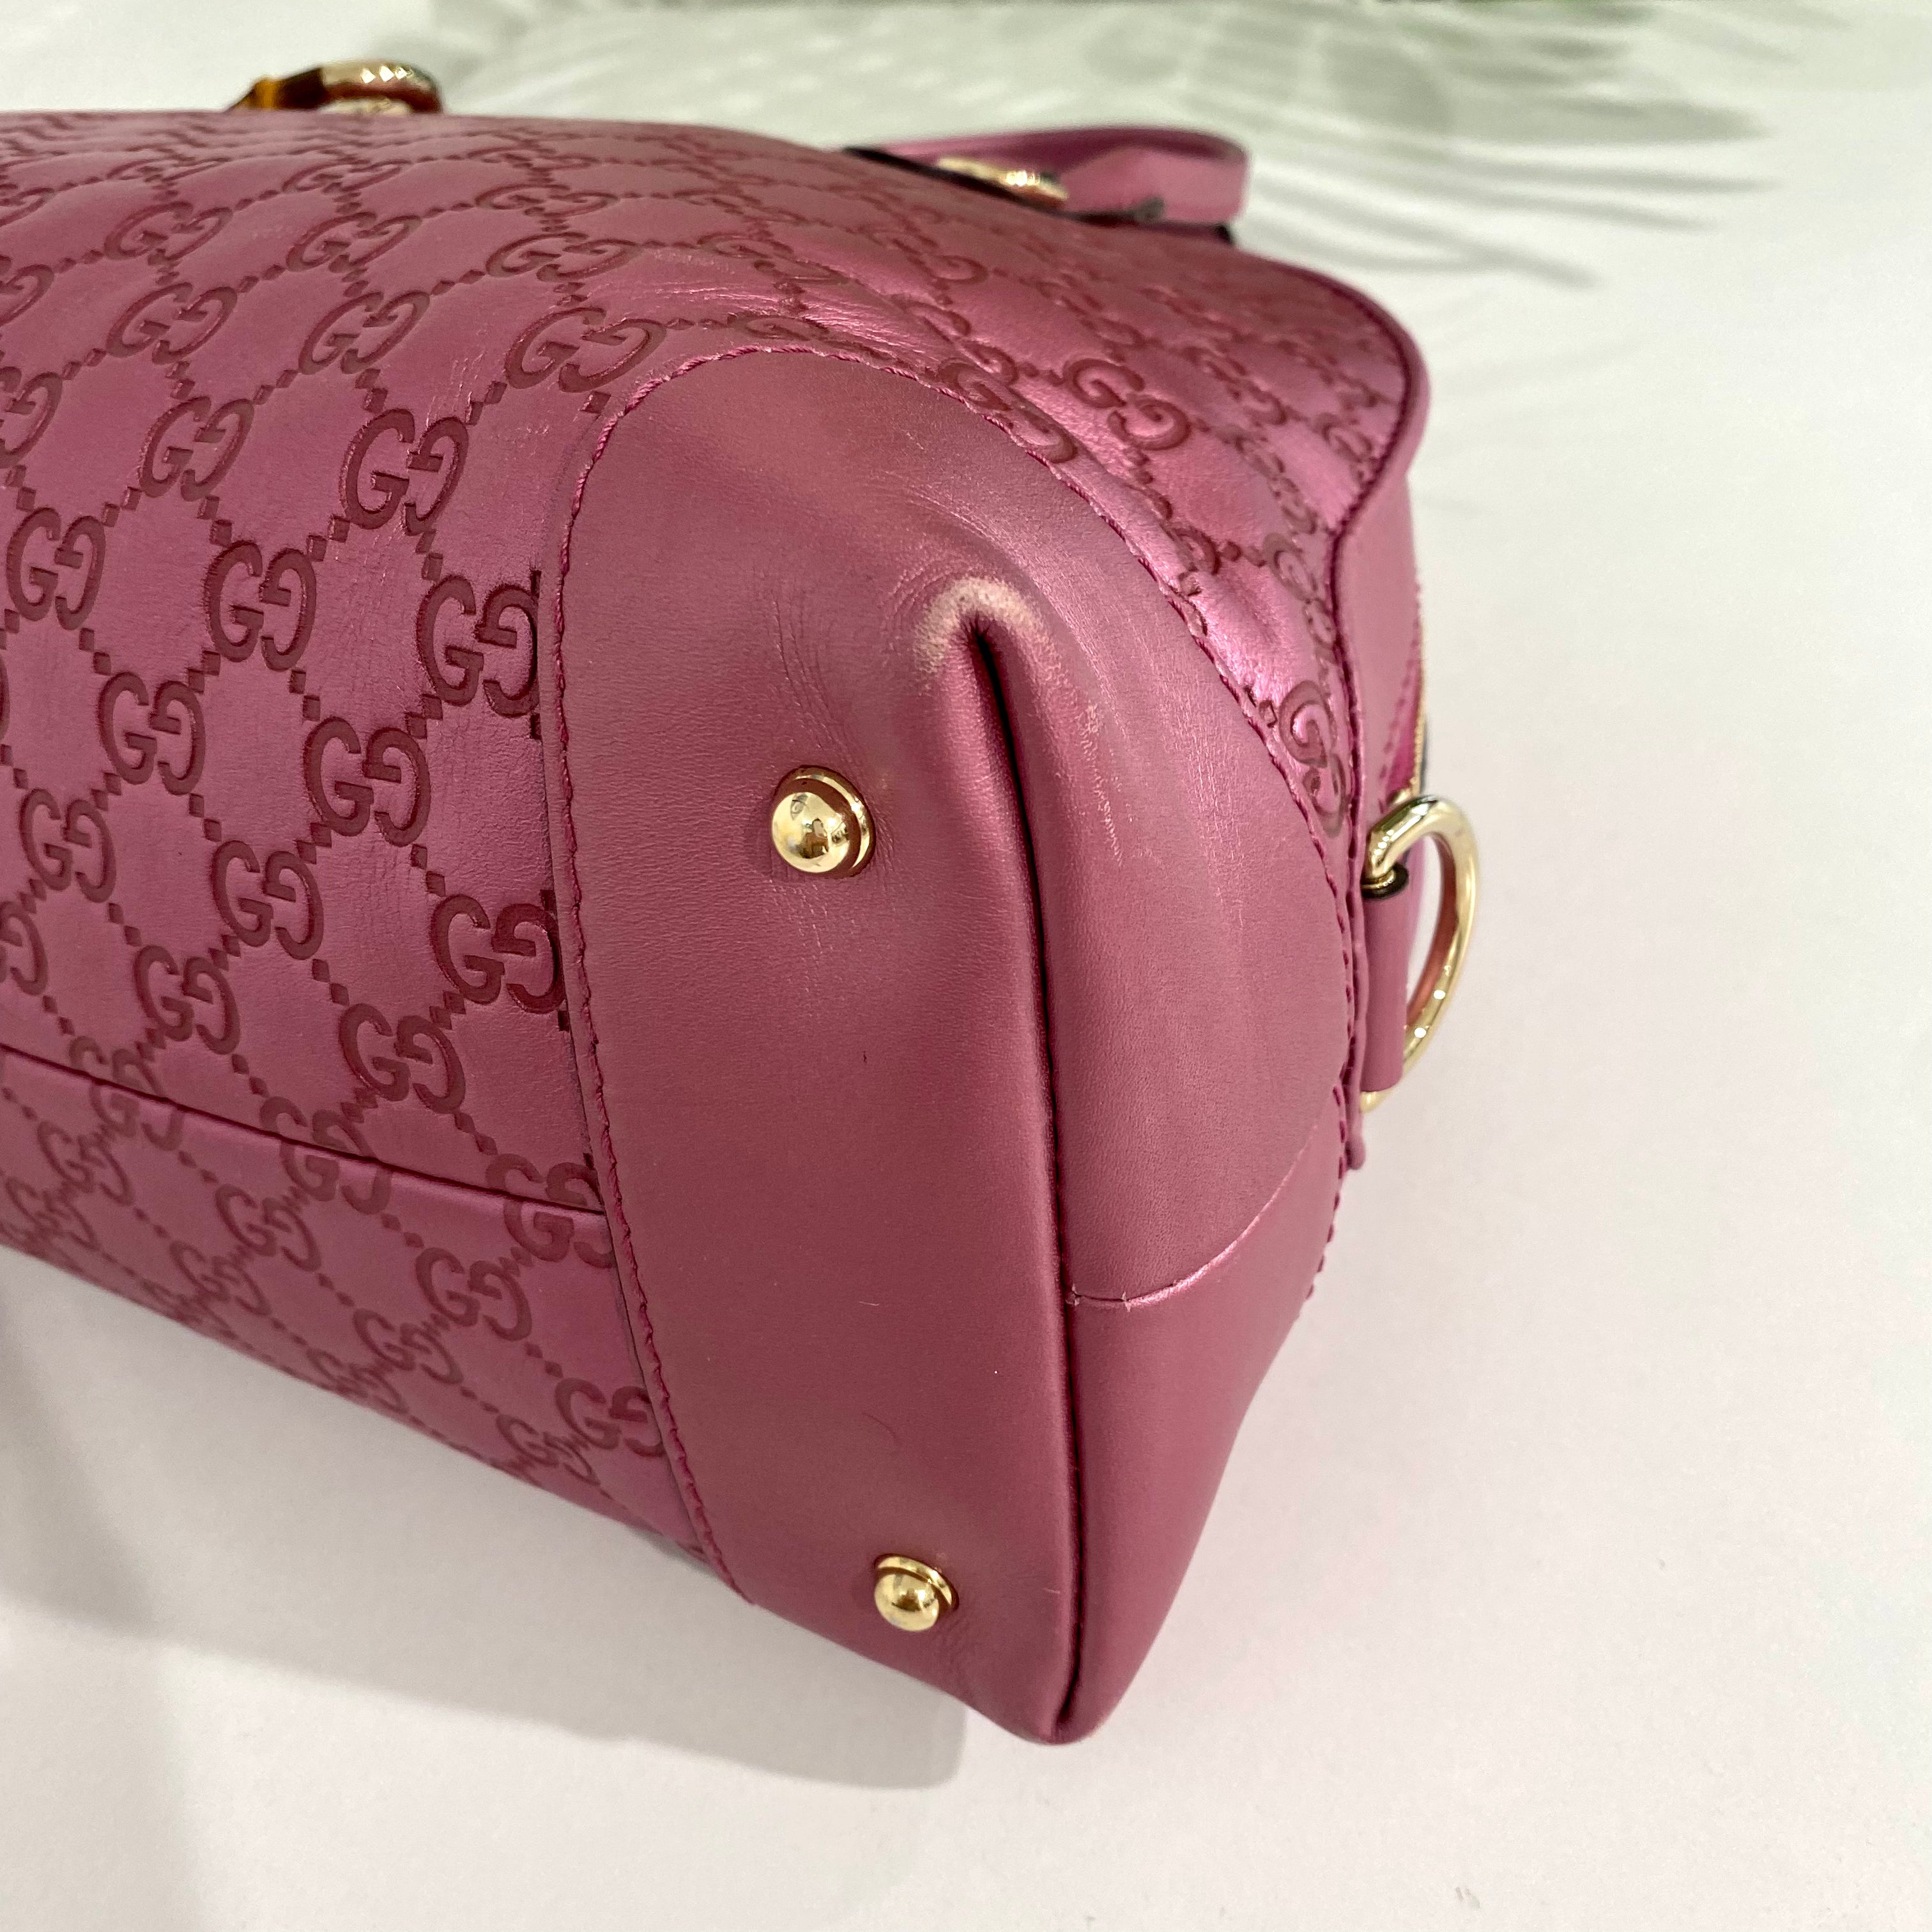 Gucci Metallic Pink Bag